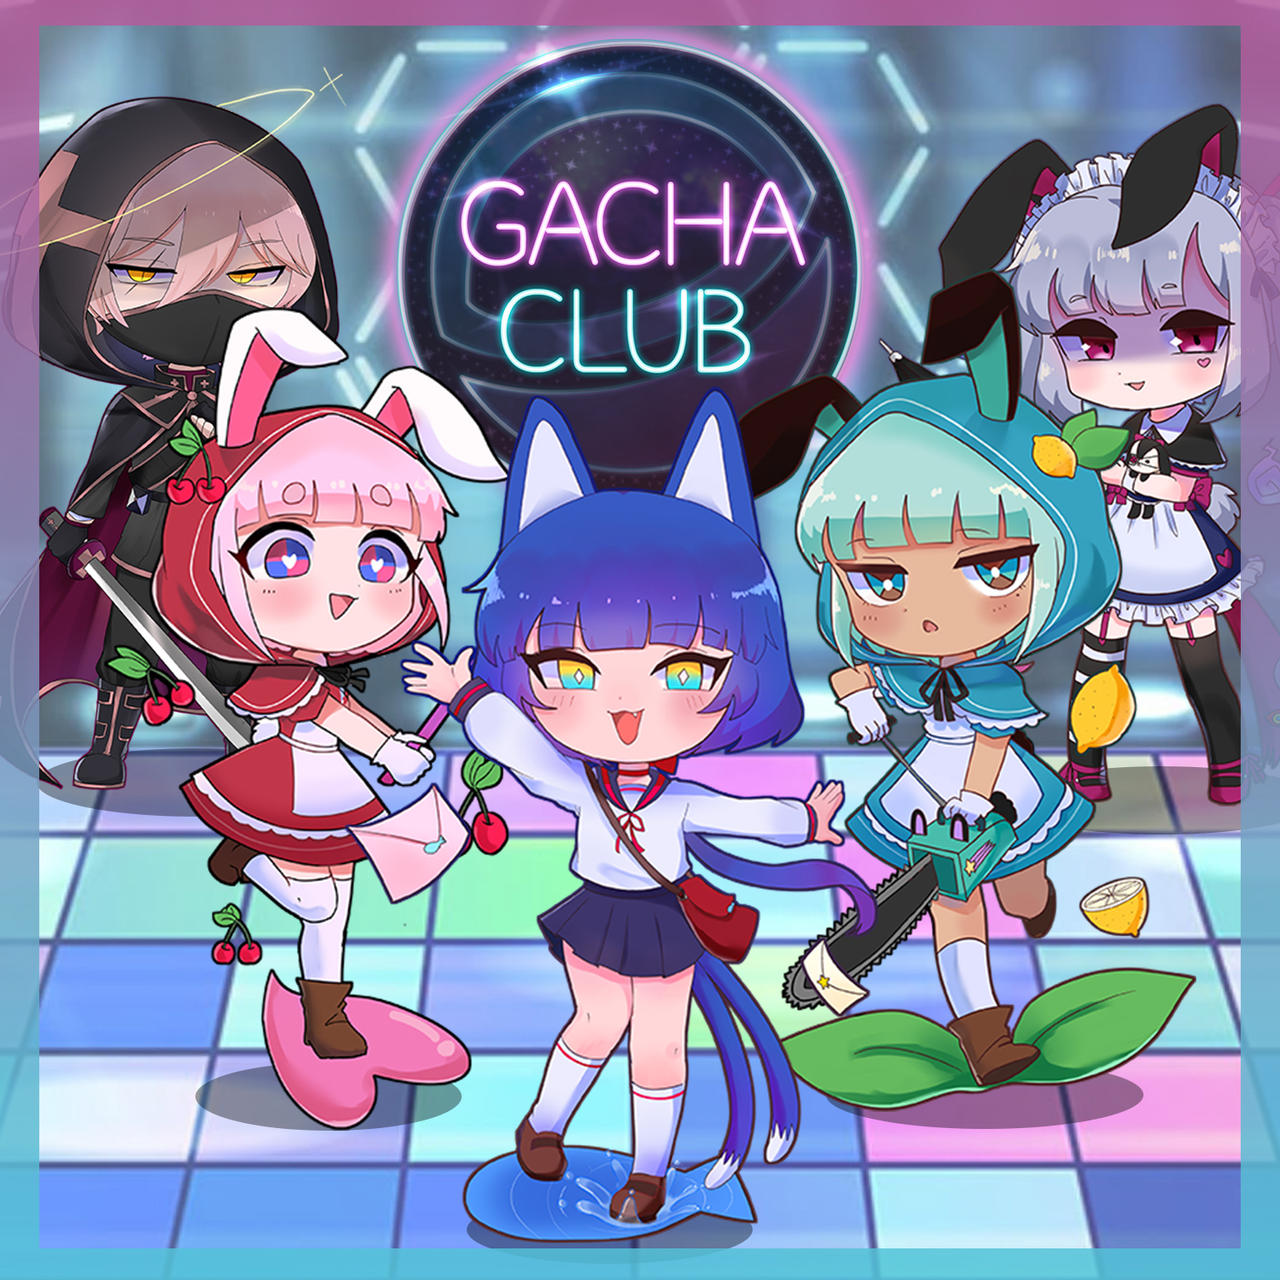 Gacha Club - Gacha Club added a new photo.